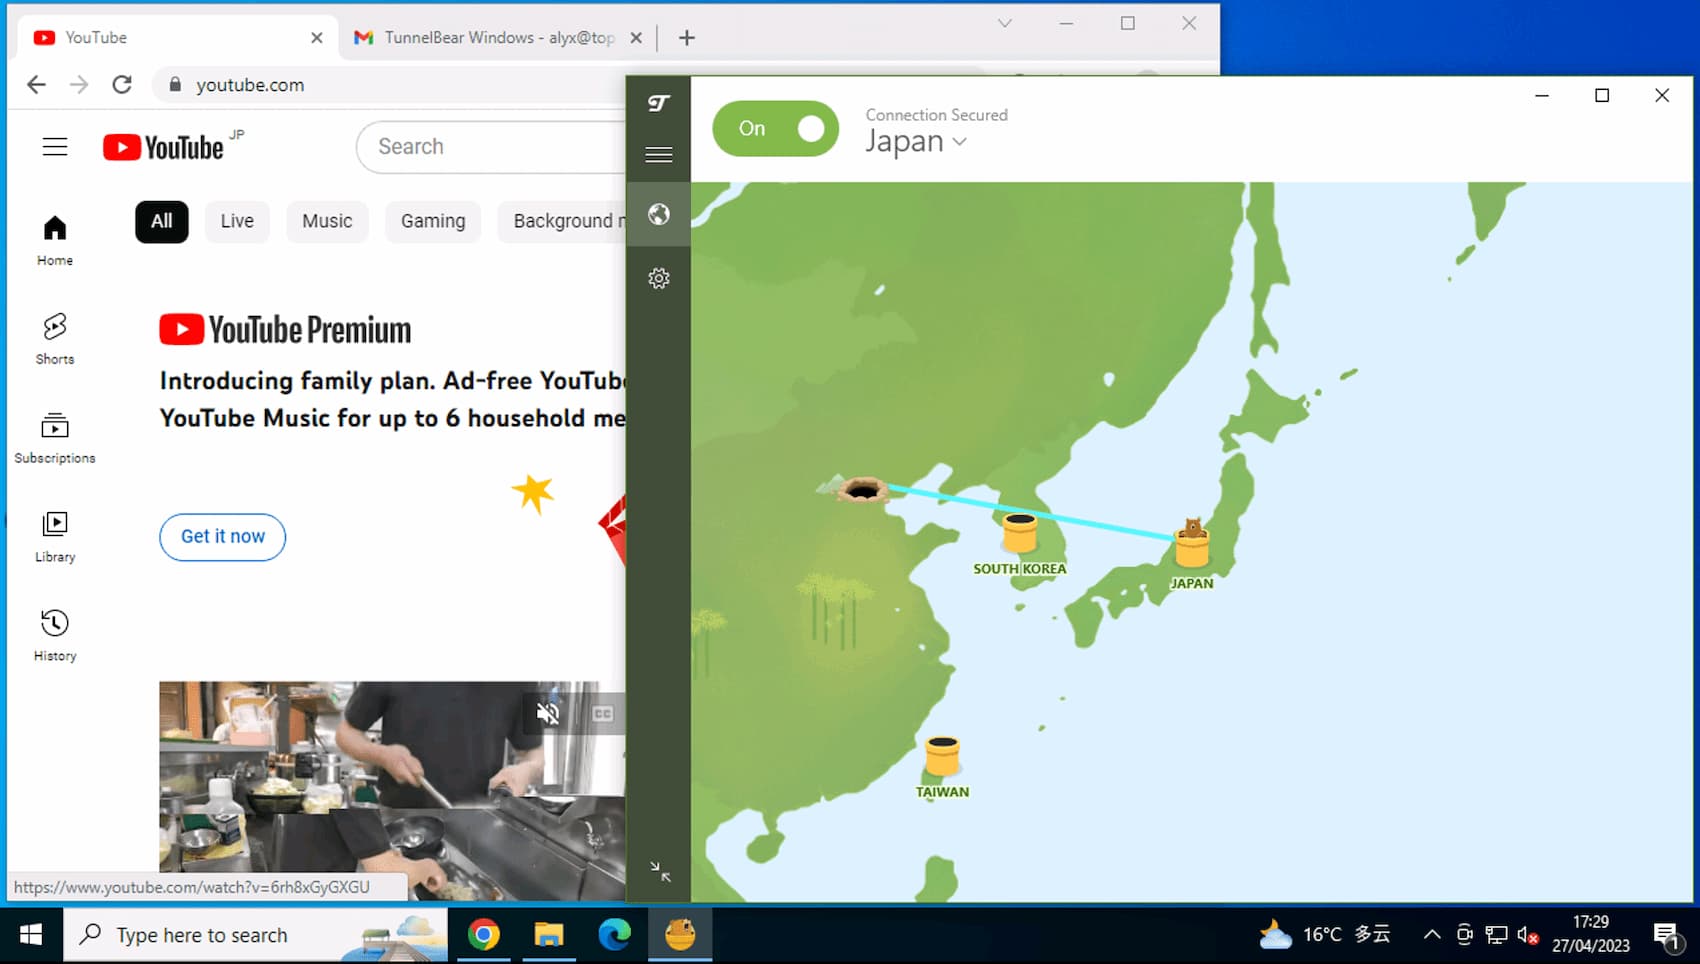 Il nostro desktop remoto in Cina mostra TunnelBear che aggira il firewall per sbloccare YouTube mentre è connesso a un server giapponese.